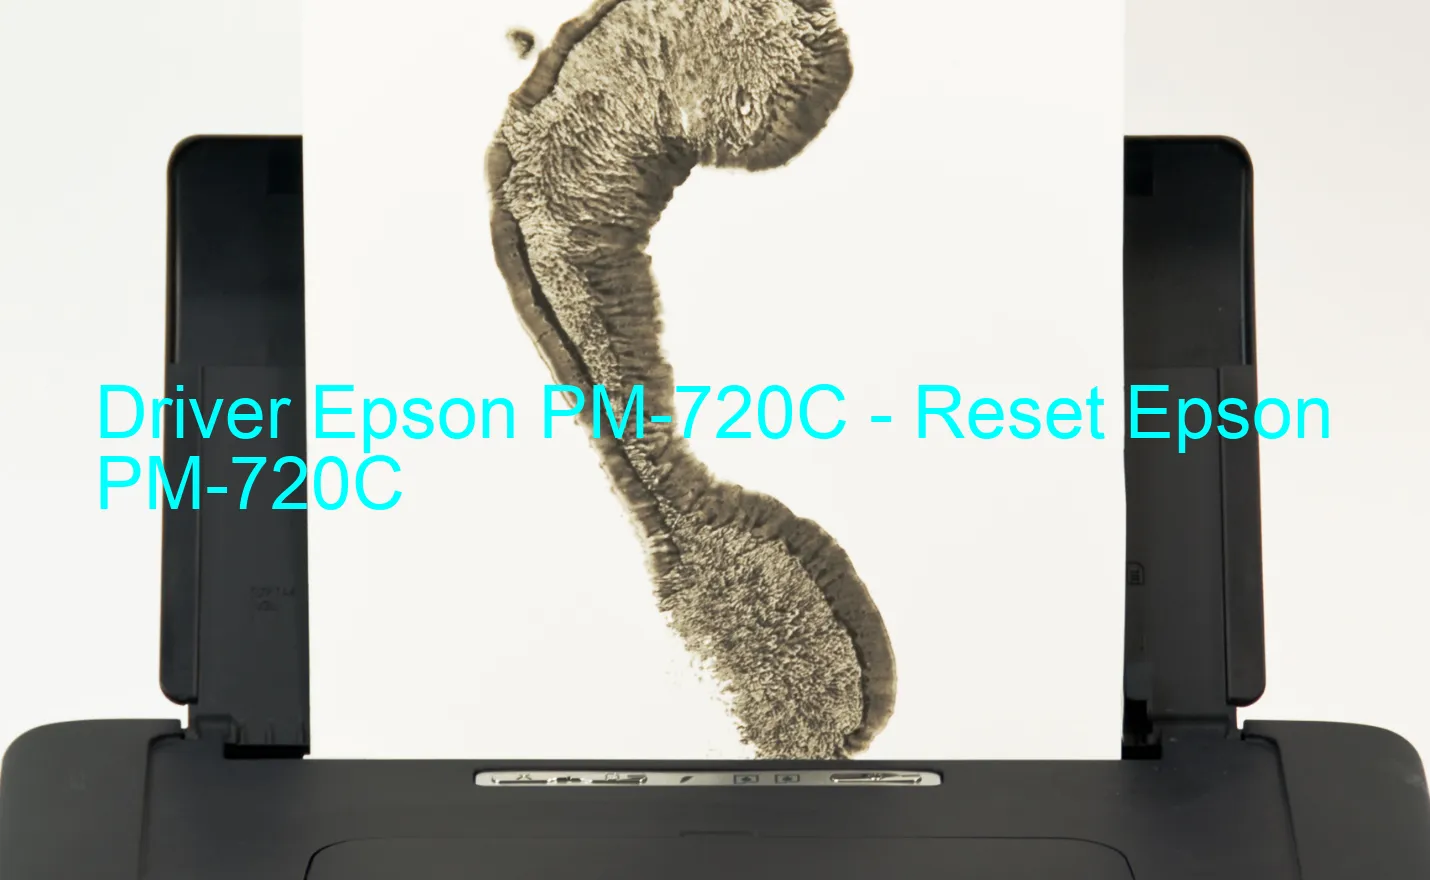 Epson PM-720Cのドライバー、Epson PM-720Cのリセットソフトウェア